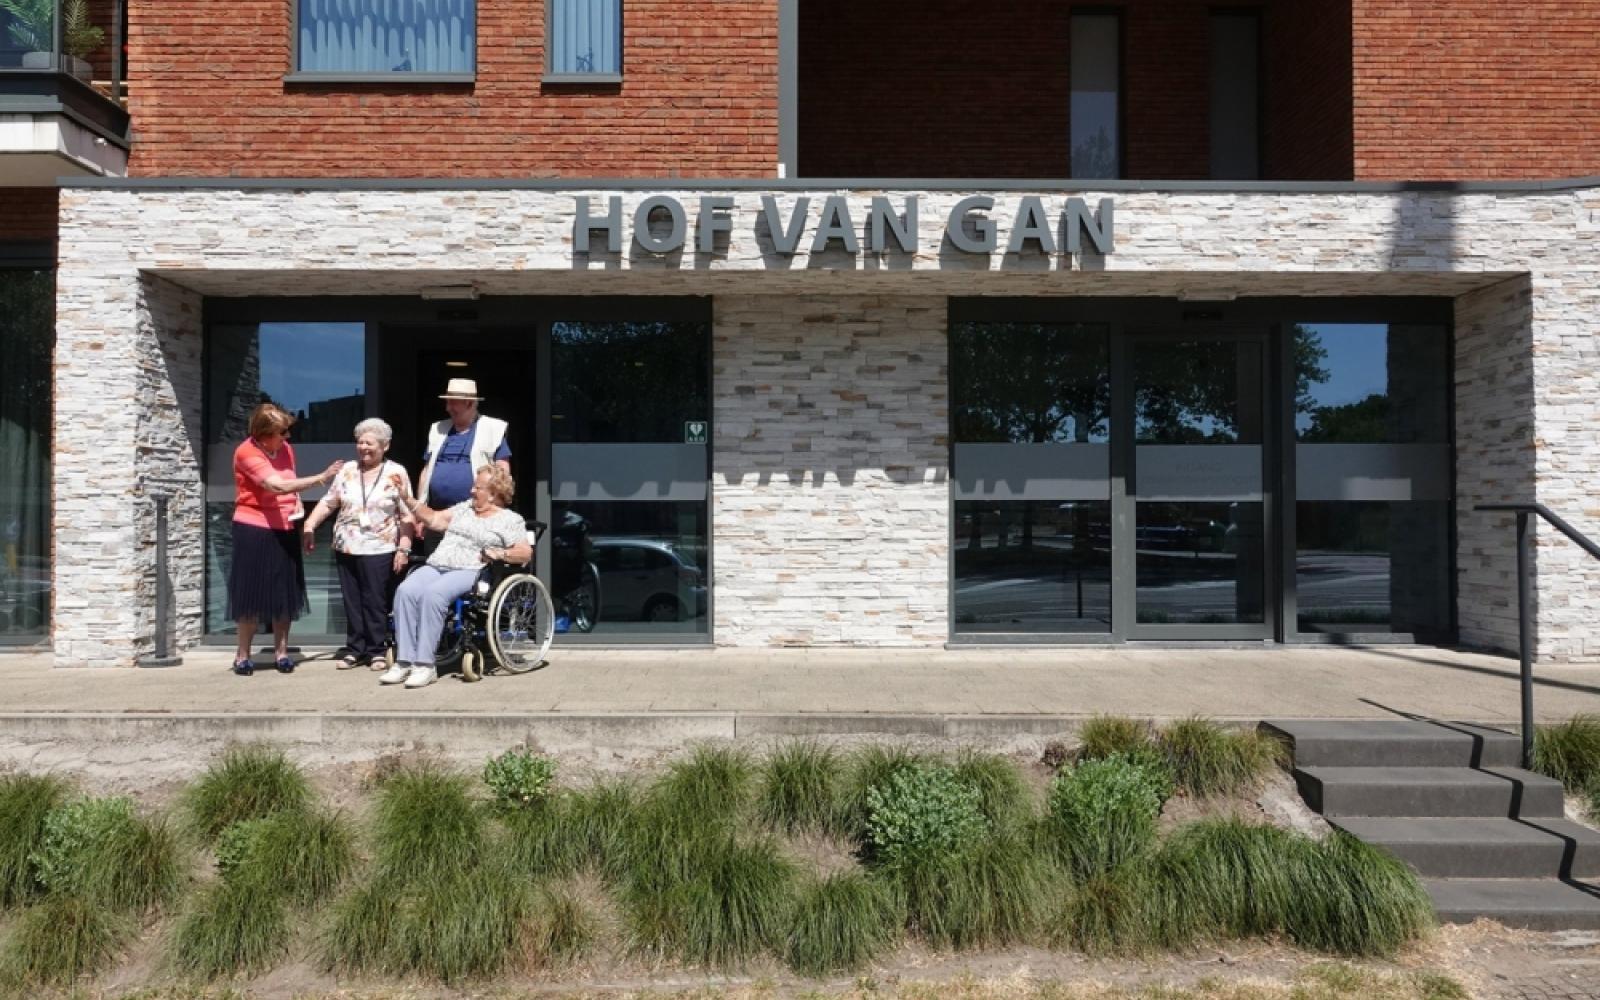 Seniorencampus Hof van Gan 